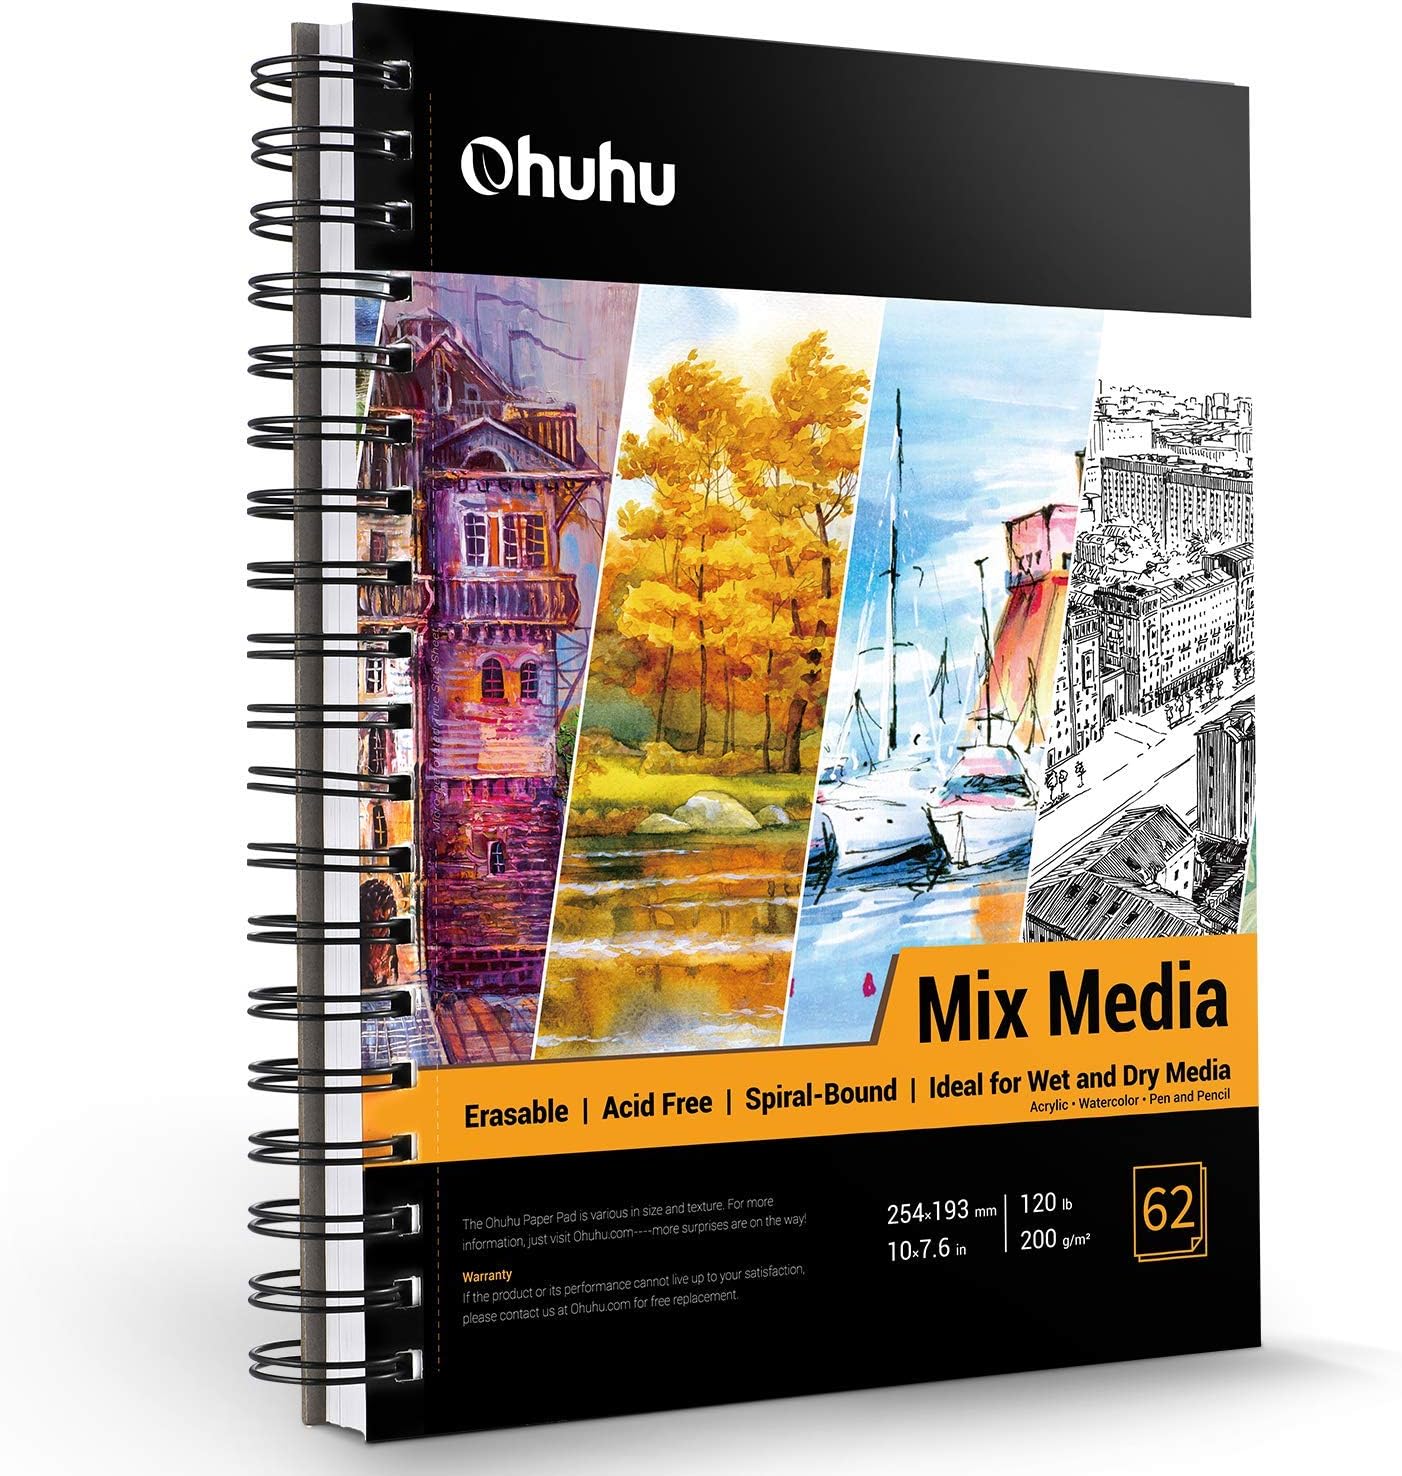 Mix Media Pad, Ohuhu 10x7.6 Mixed Media Art Sketchbook, 120 LB